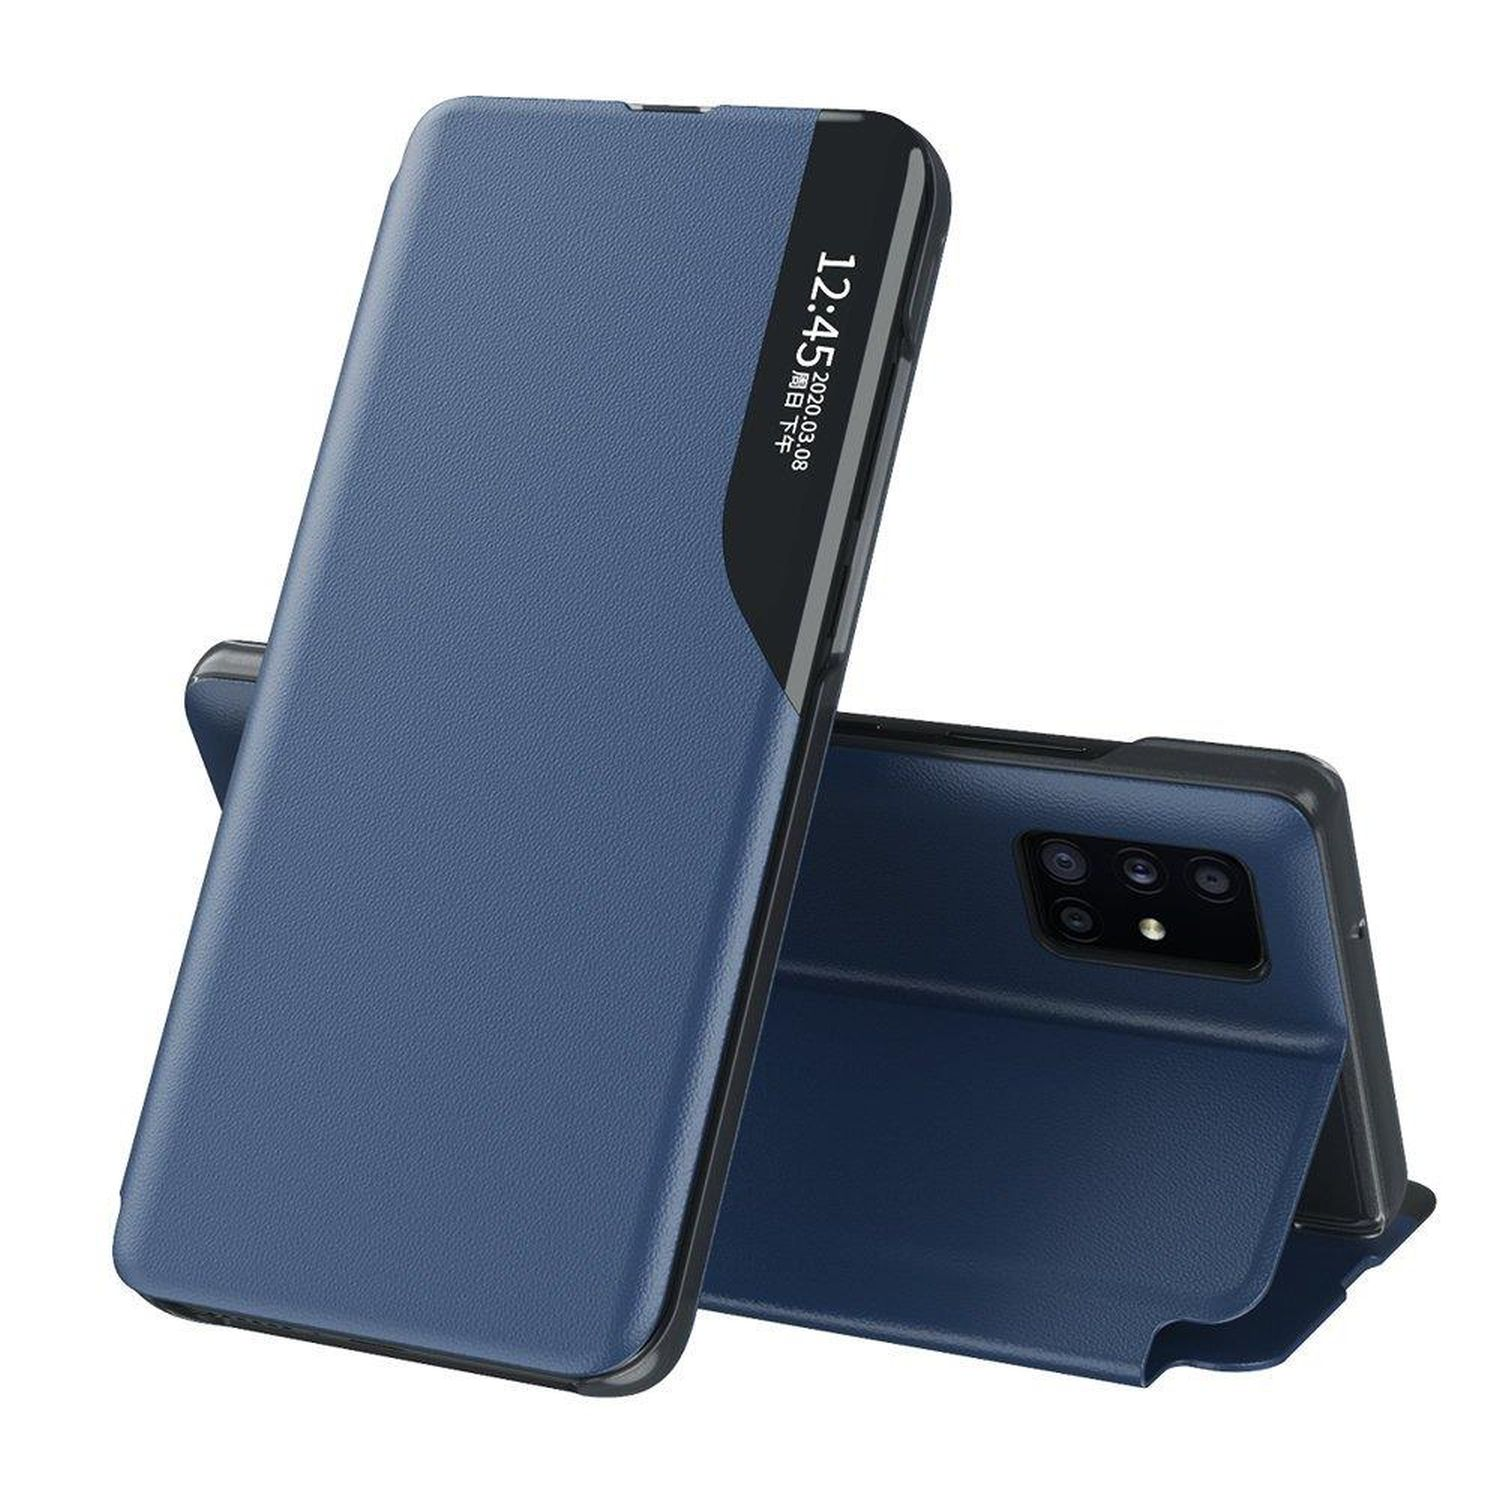 COFI S20 Blau Galaxy View Case, Ultra, Samsung, Bookcover, Smart